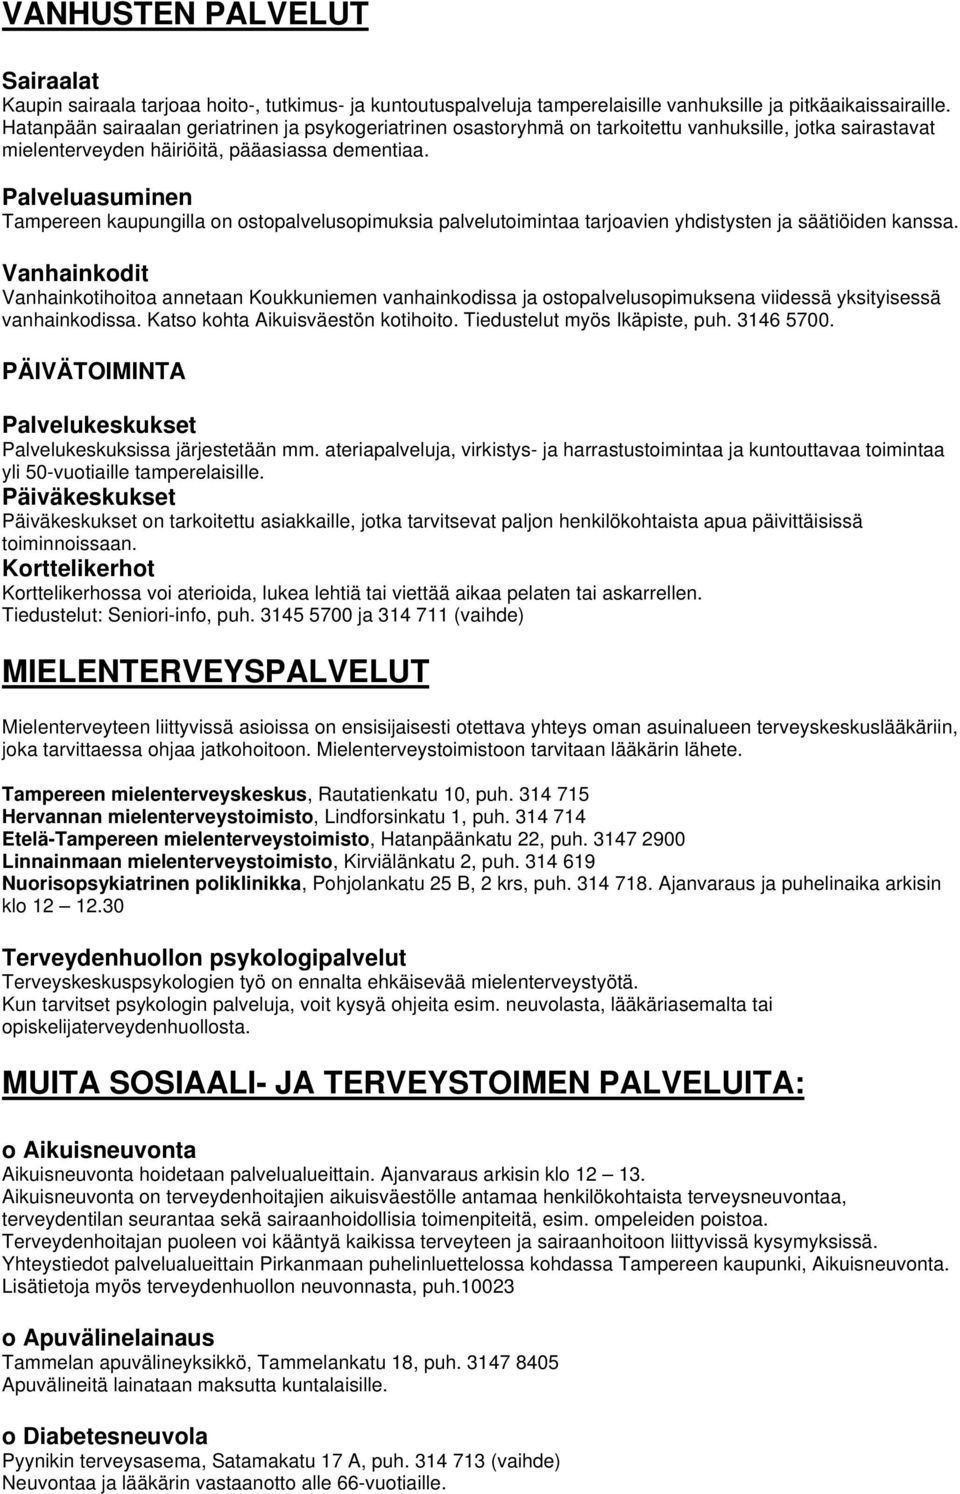 Palveluasuminen Tampereen kaupungilla on ostopalvelusopimuksia palvelutoimintaa tarjoavien yhdistysten ja säätiöiden kanssa.